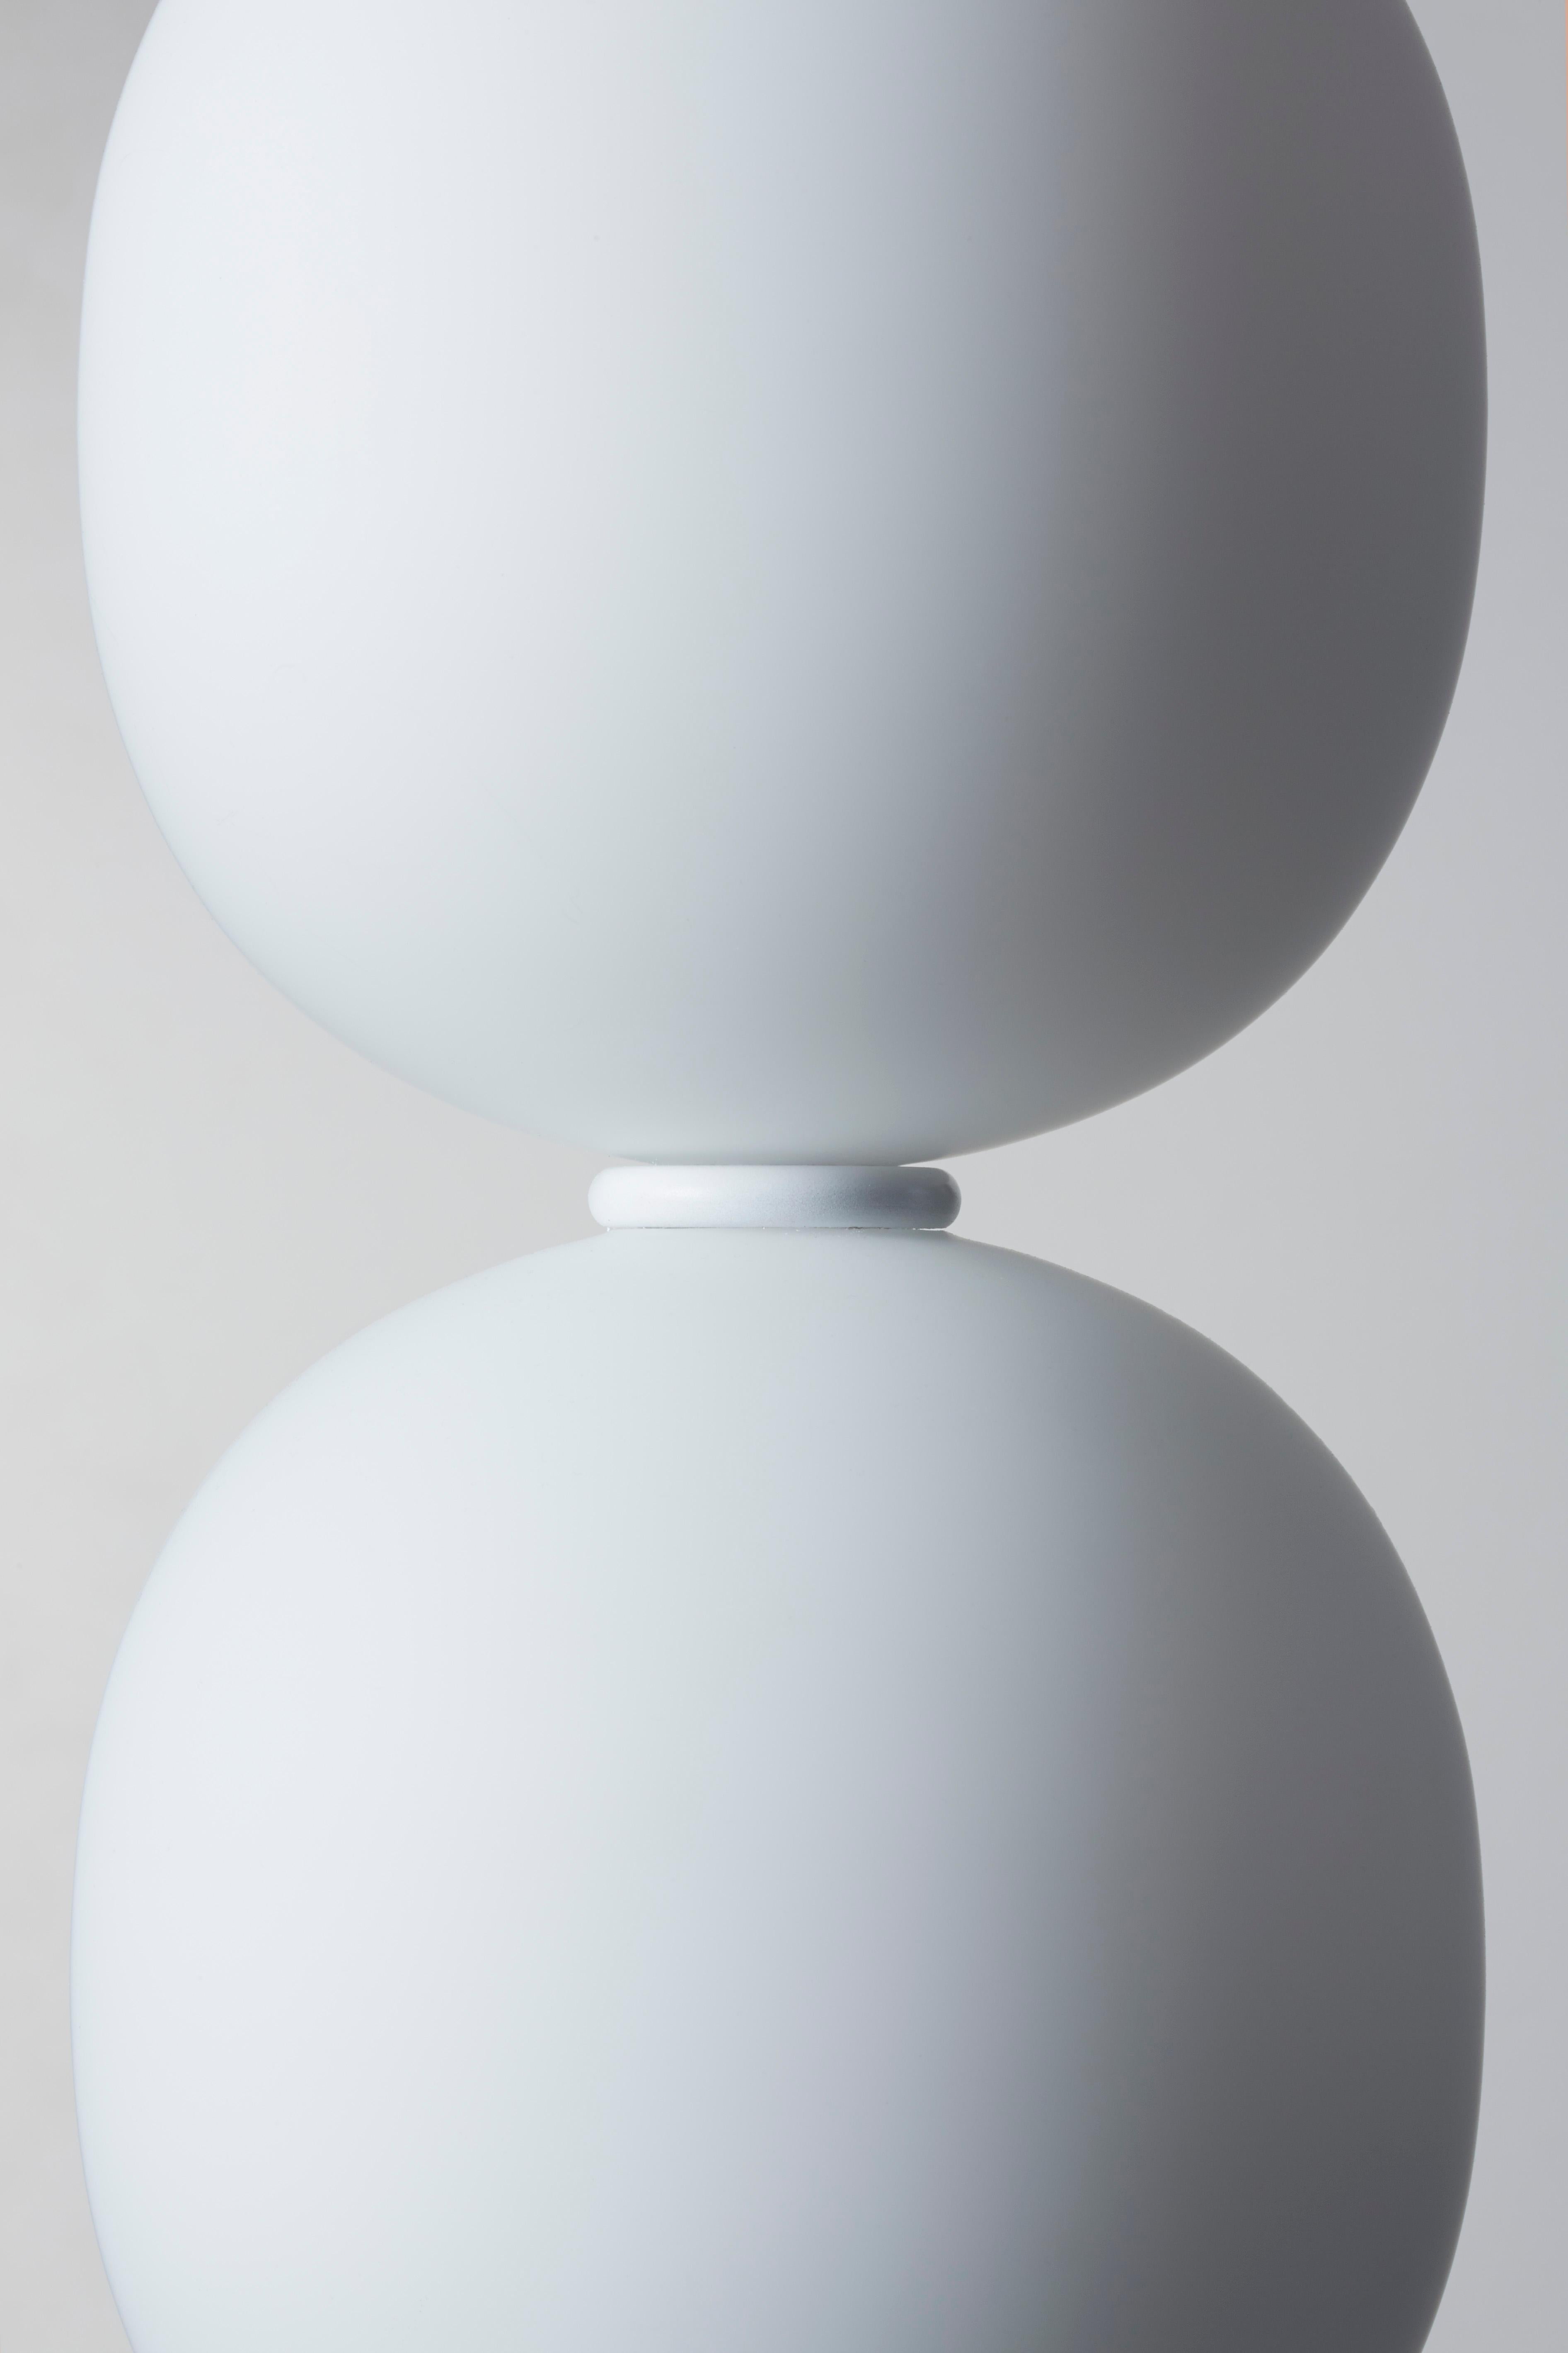 Grappa G3 by Claesson Koivisto Rune — Pendant Lamp For Sale 1